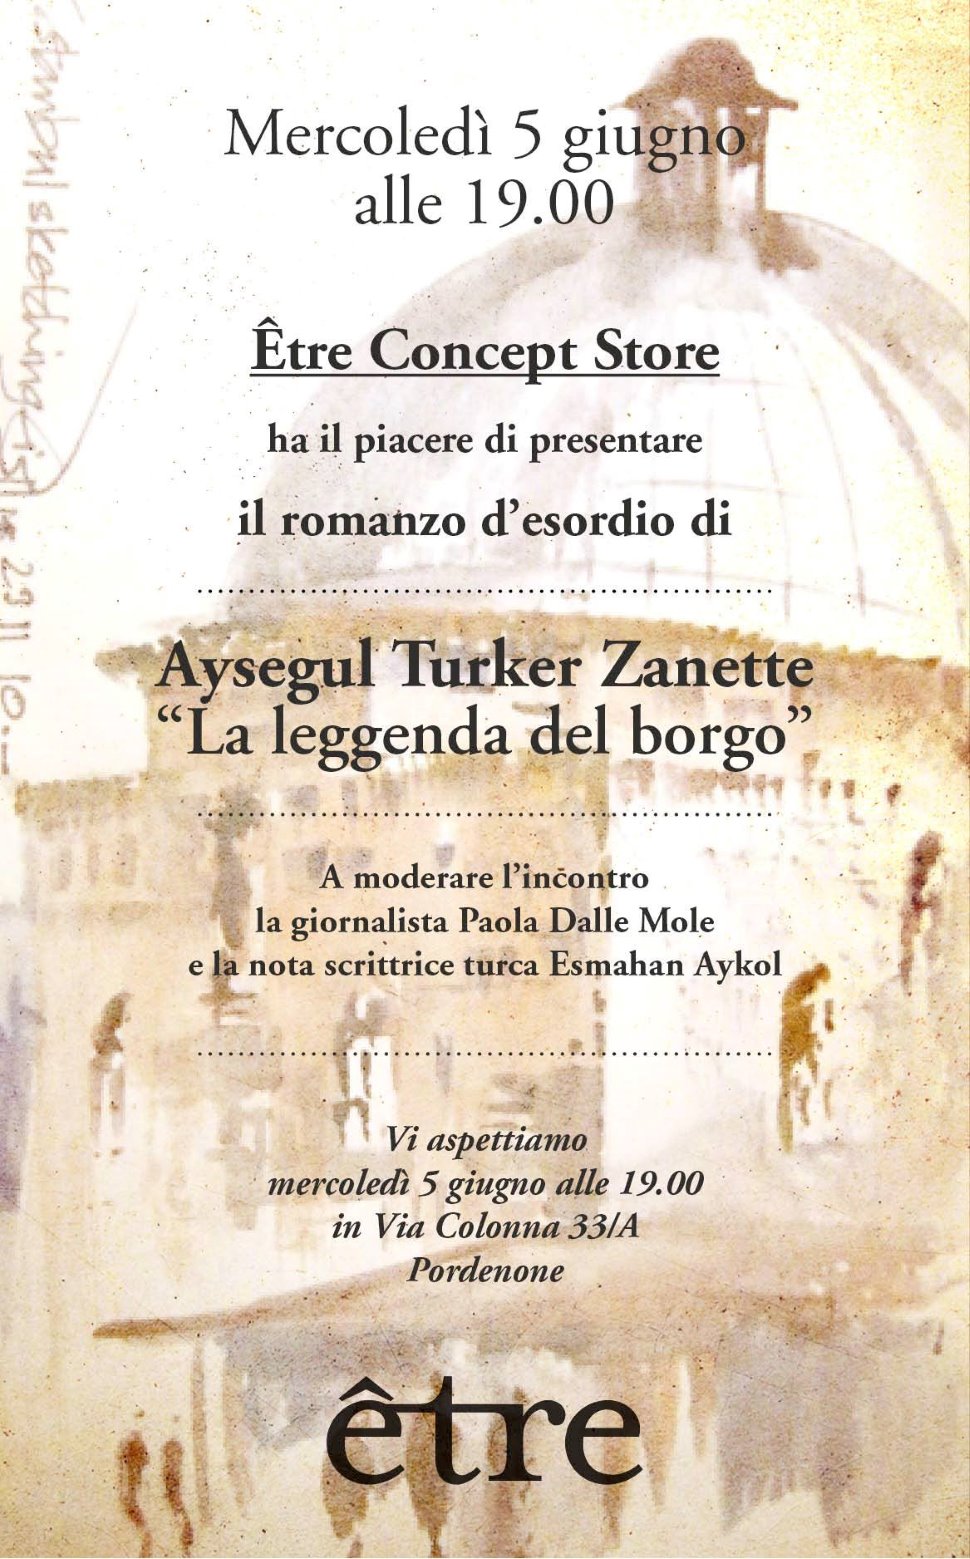 Presentazione del romanzo d'esordio di Aysegul Turker Zanette "La leggenda del borgo"